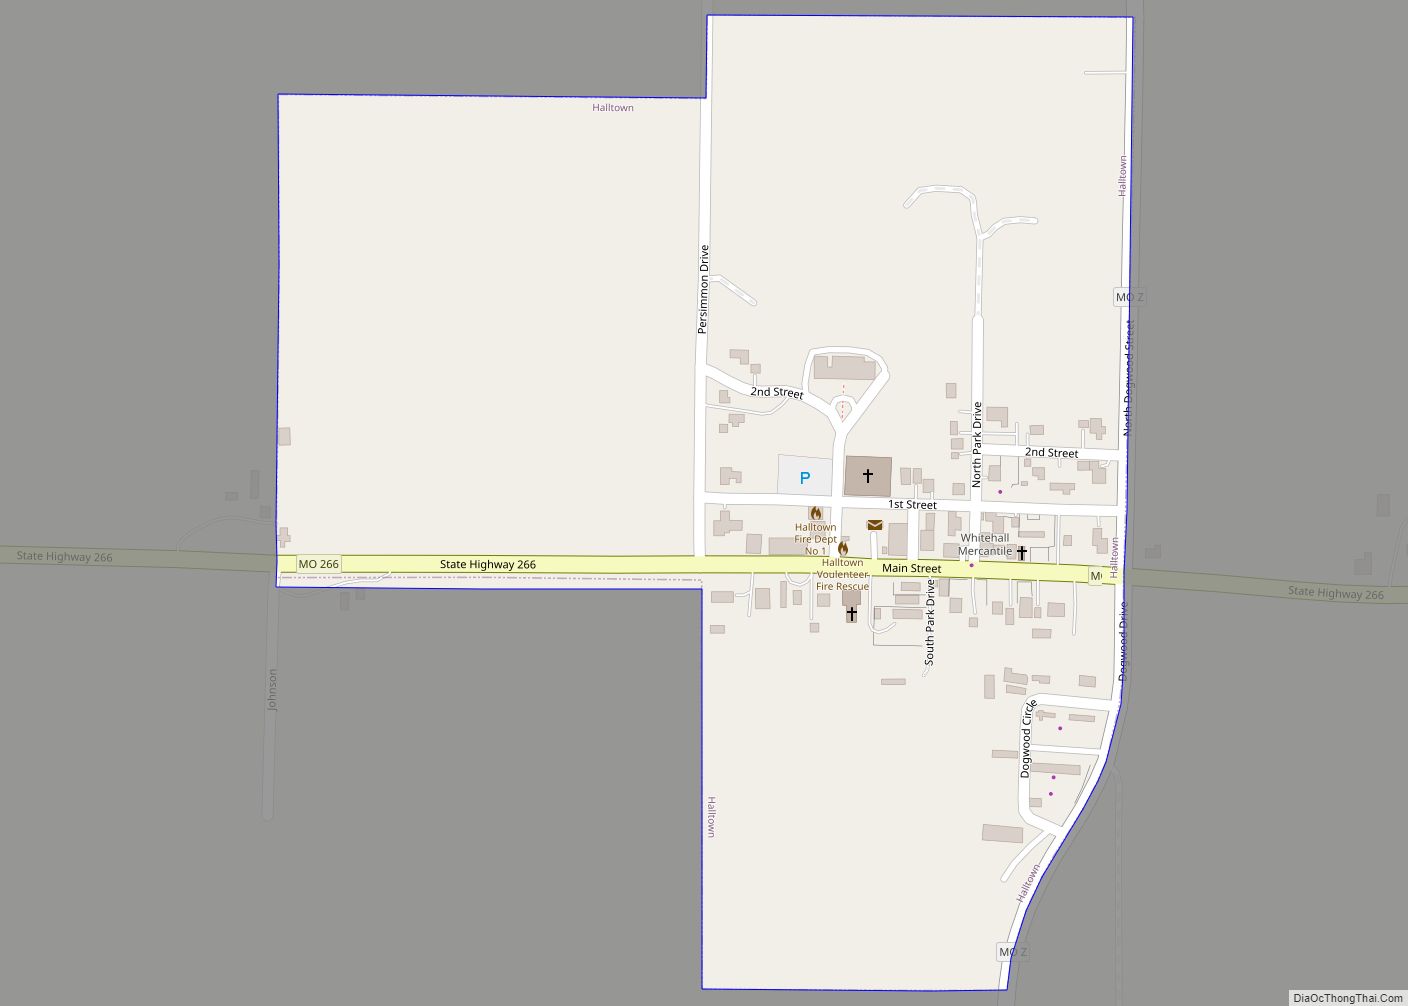 Map of Halltown village